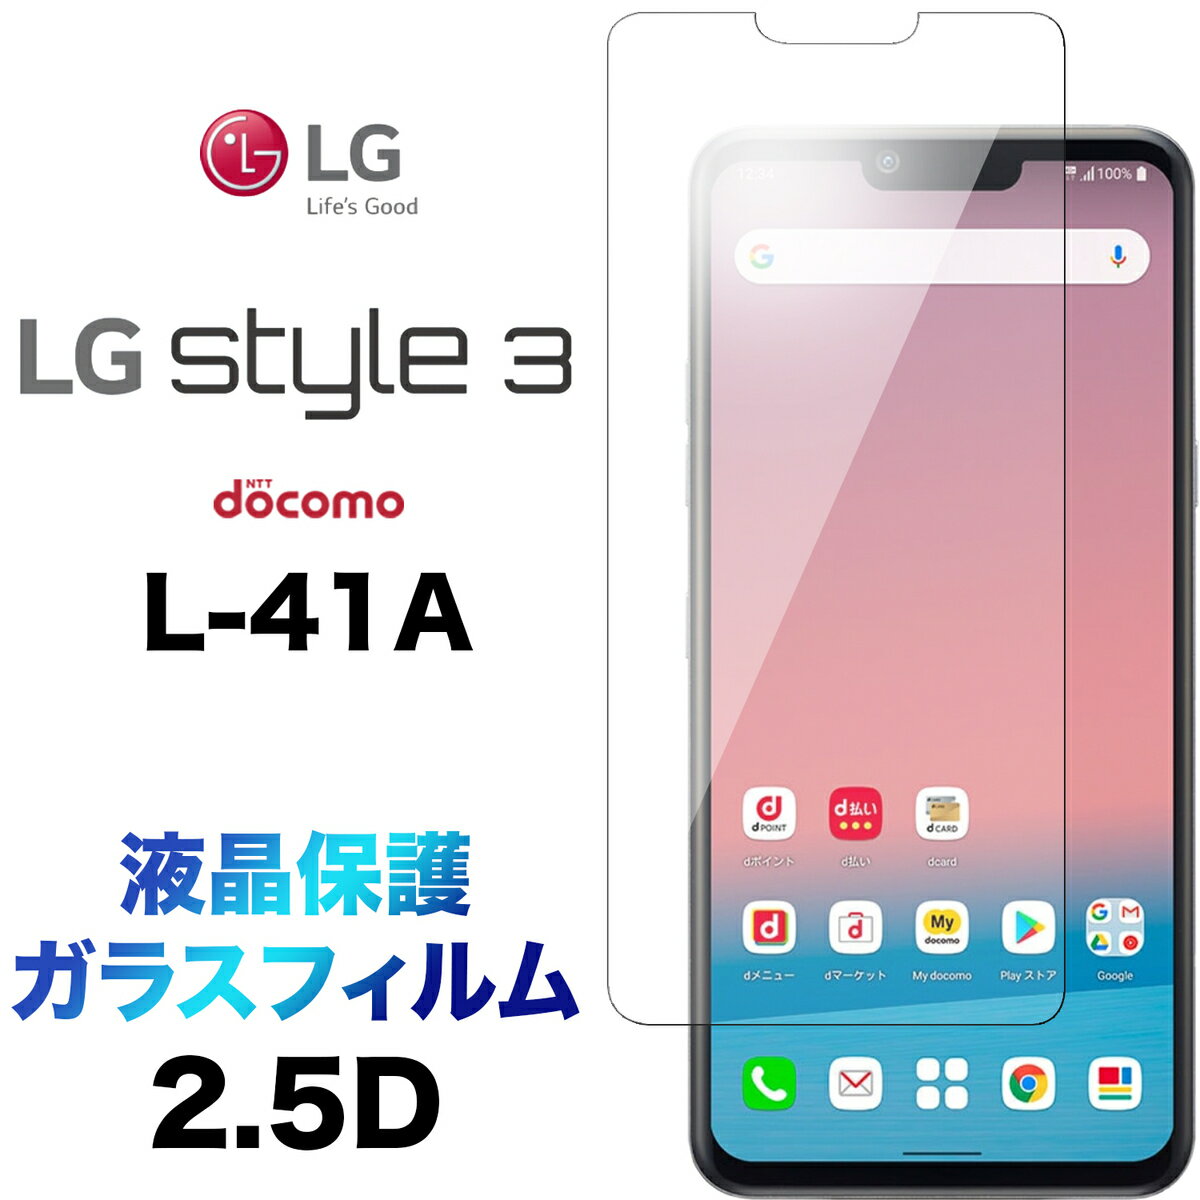 LG style3 L-41A L41A KXtB 2.5D ʕی یtB KX dx9H tی N[i[V[gt EhGbW GW[ X^C3 docomo hR 